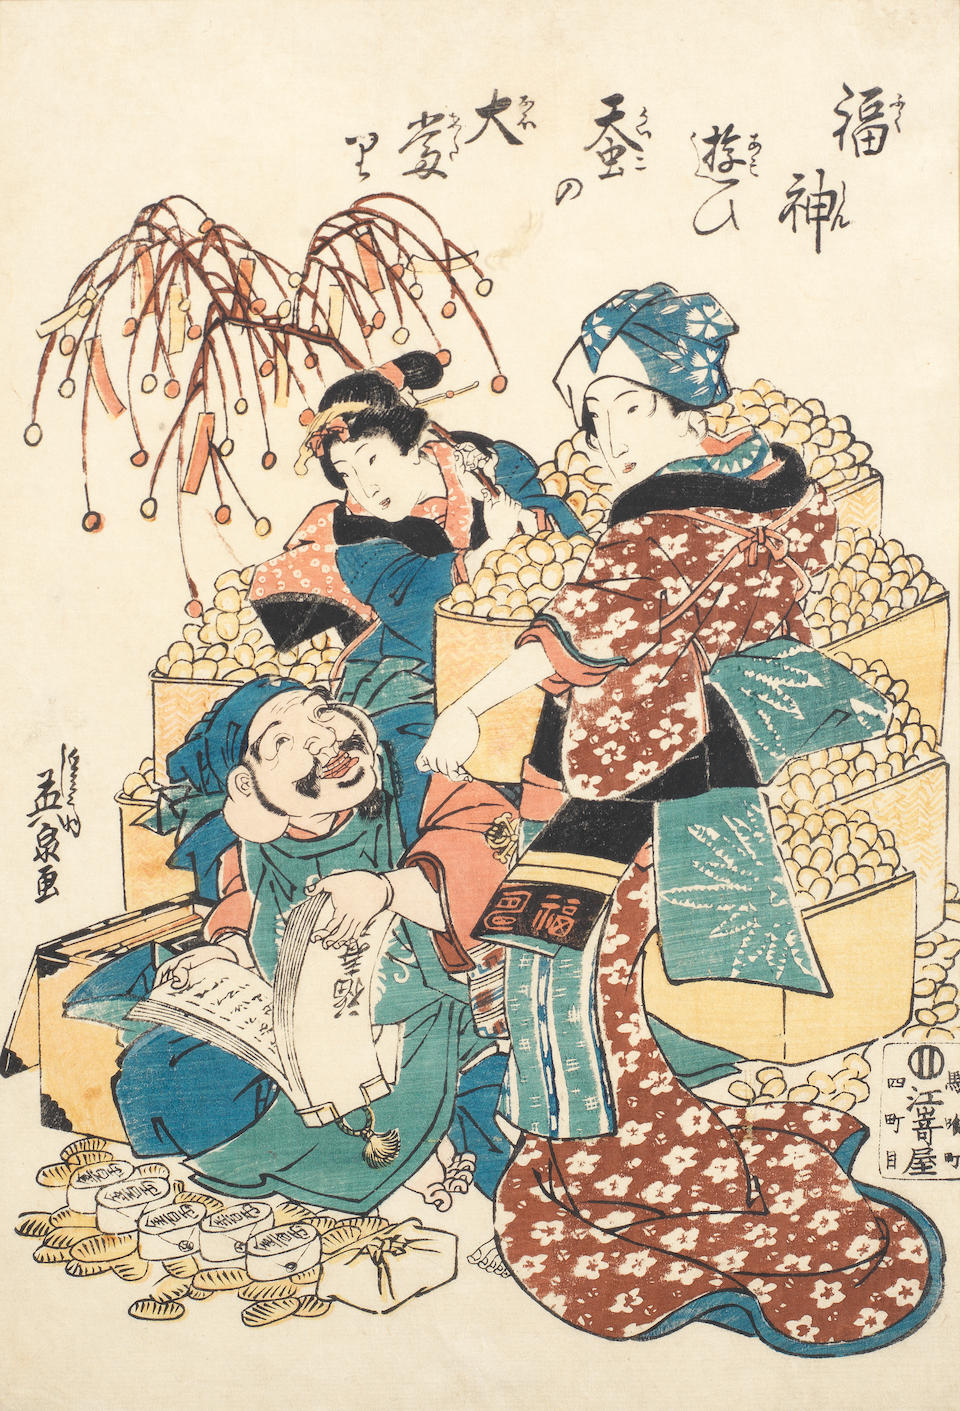 Kitagawa Utamaro (1753-1806), Chobunsai Eishi (1756-1829), Keisai Eisen (1790-1848) and others Late 18th to 19th century